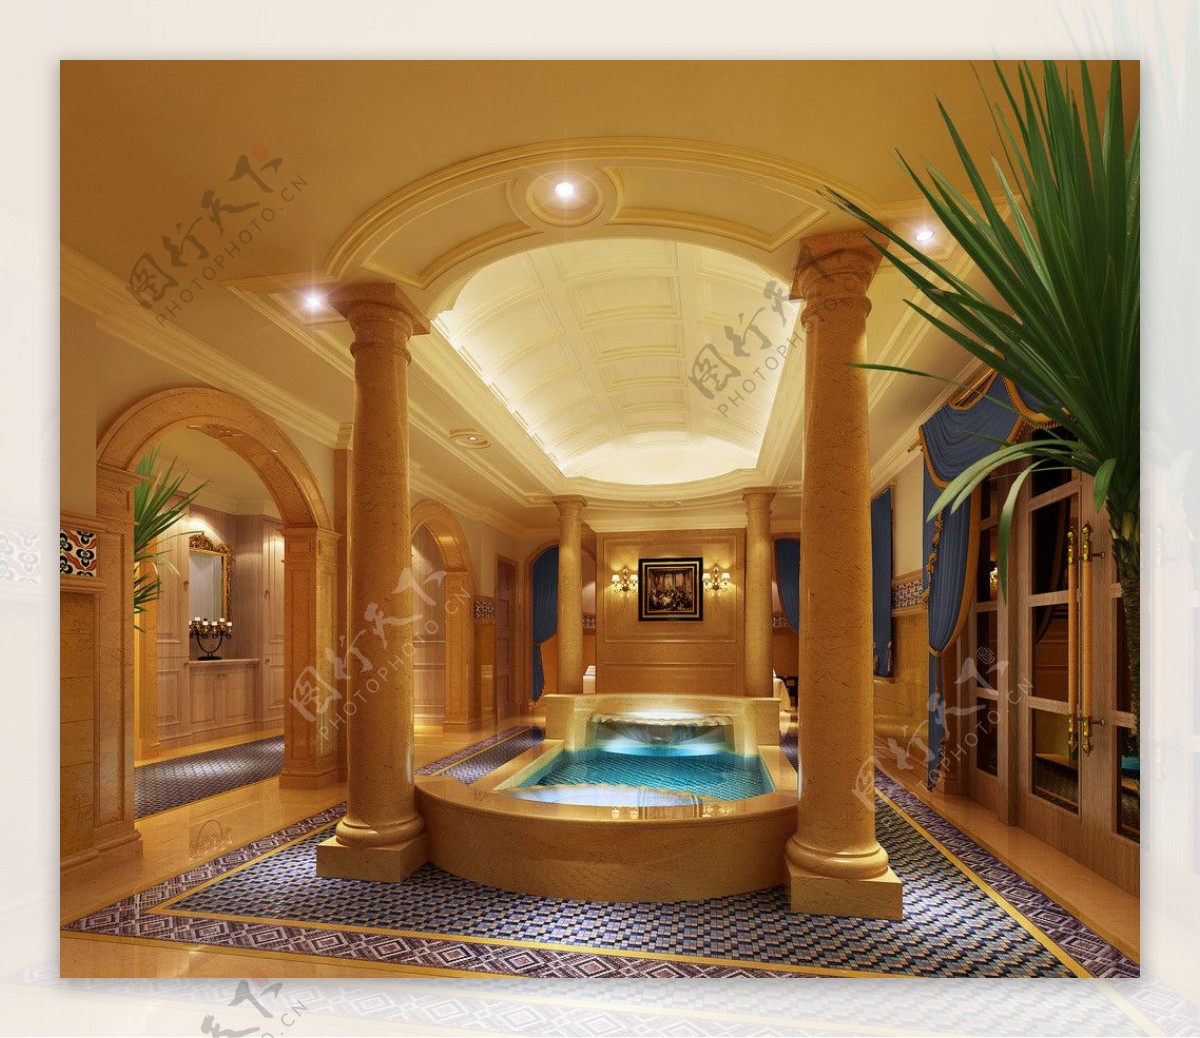 室内沐浴池设计效果图图片